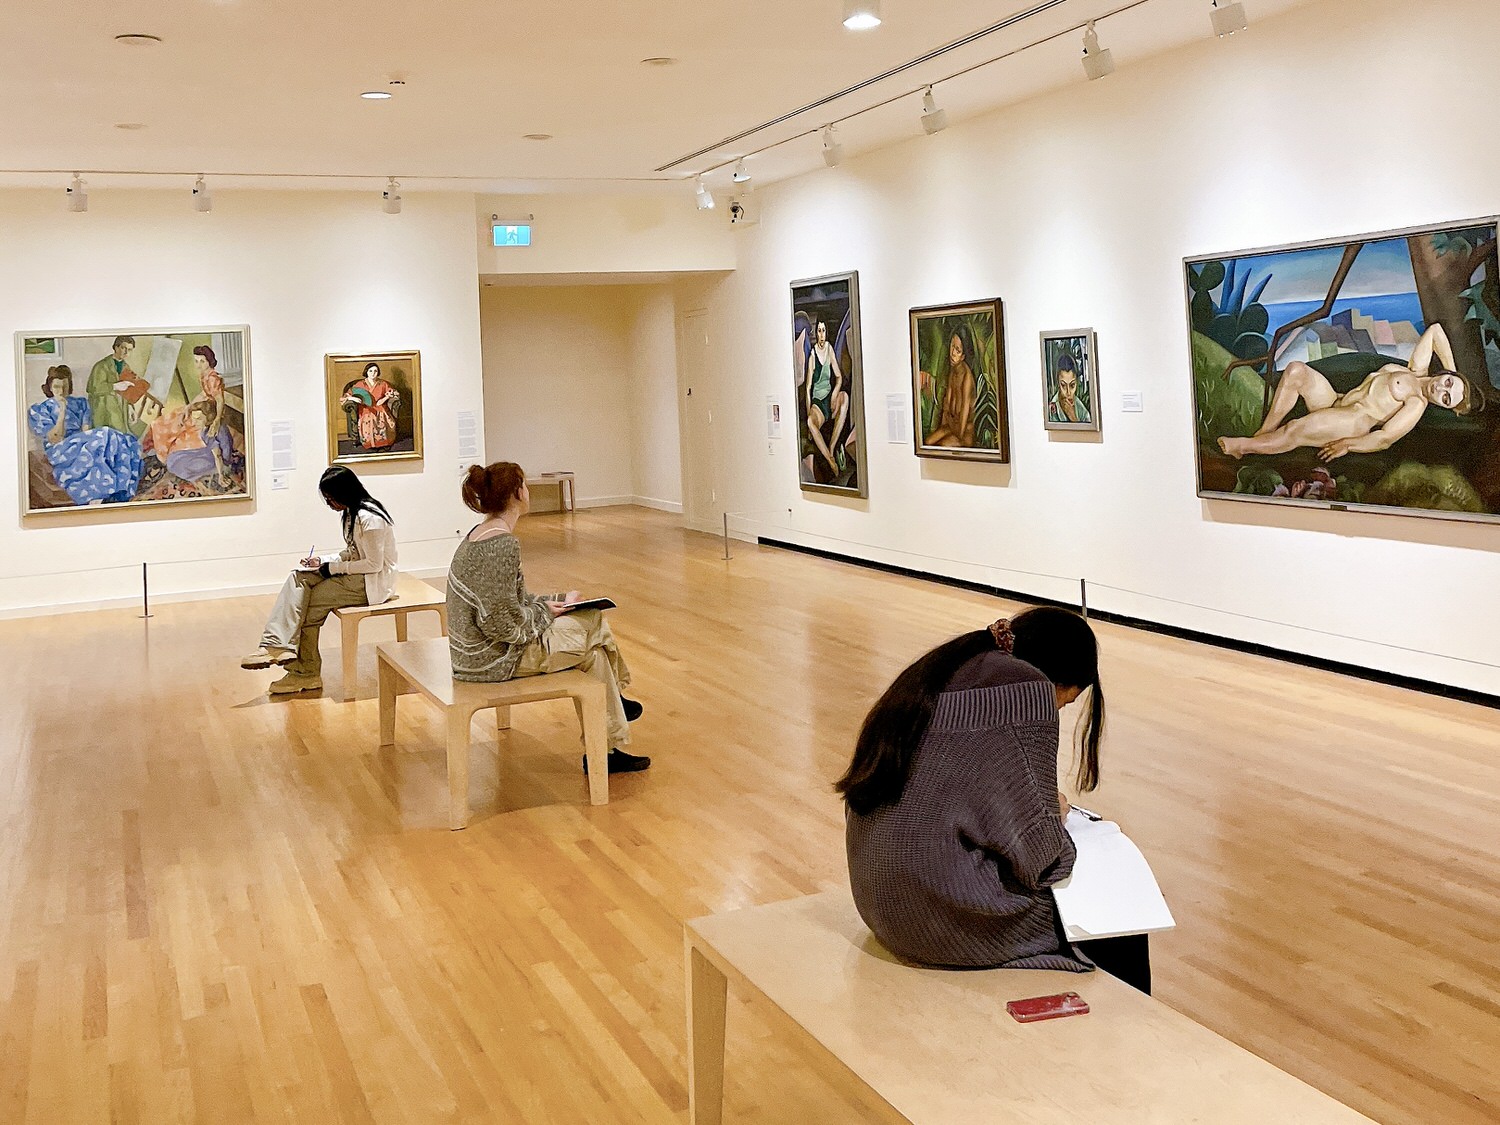 溫哥華美術館 Vancouver Art Gallery
免費入場方法